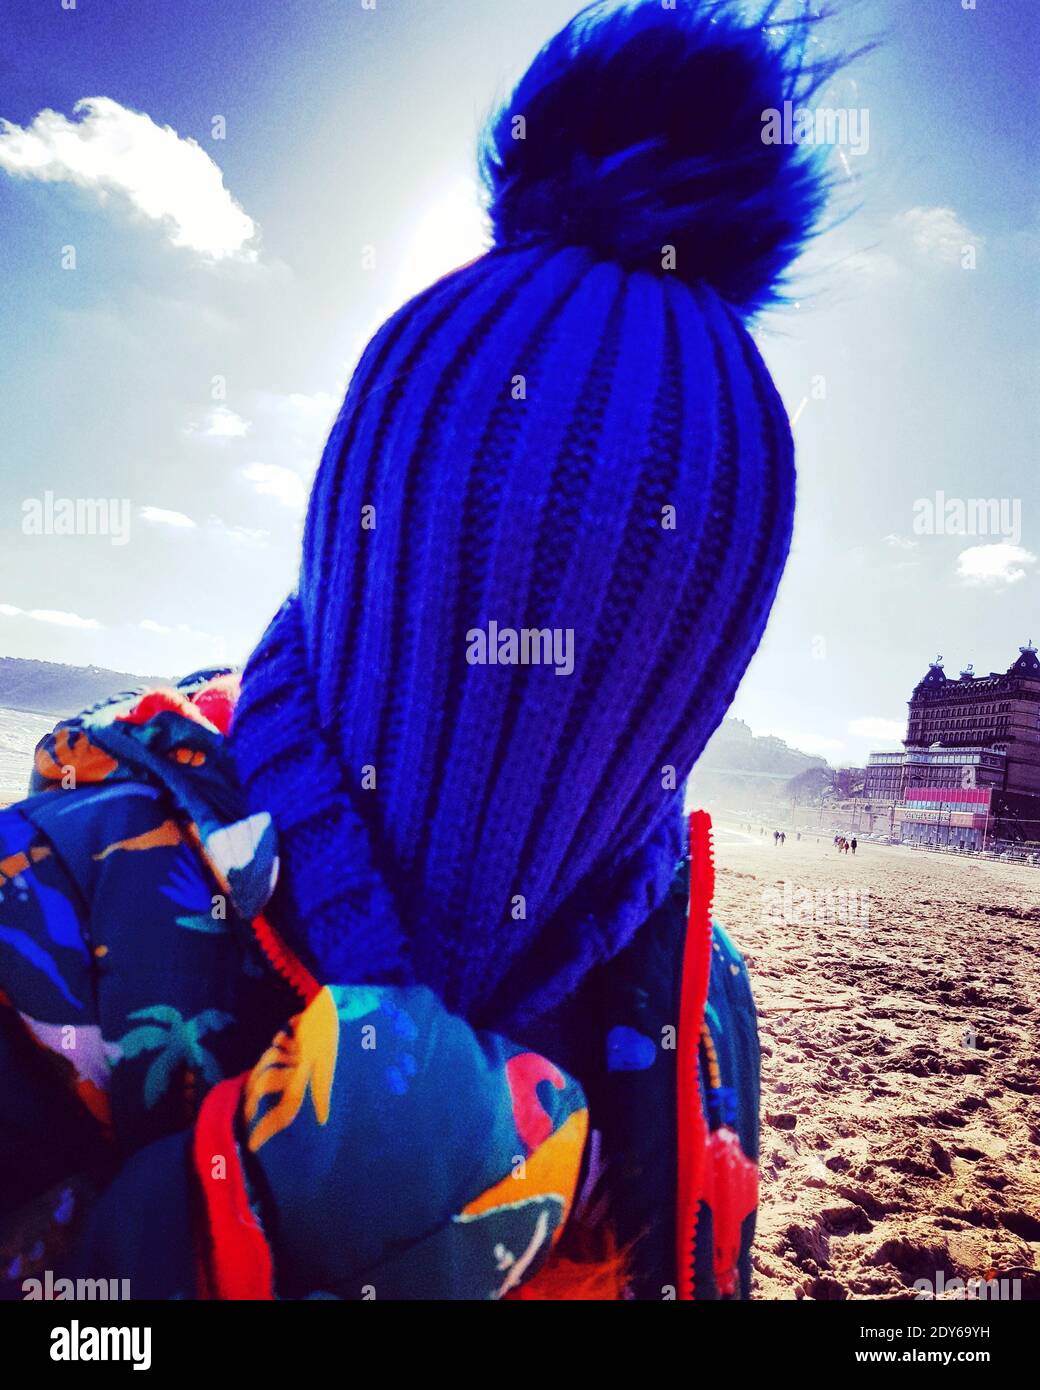 Gros plan sur le visage de l'enfant avec bonnet en maille bleue à la plage  Photo Stock - Alamy